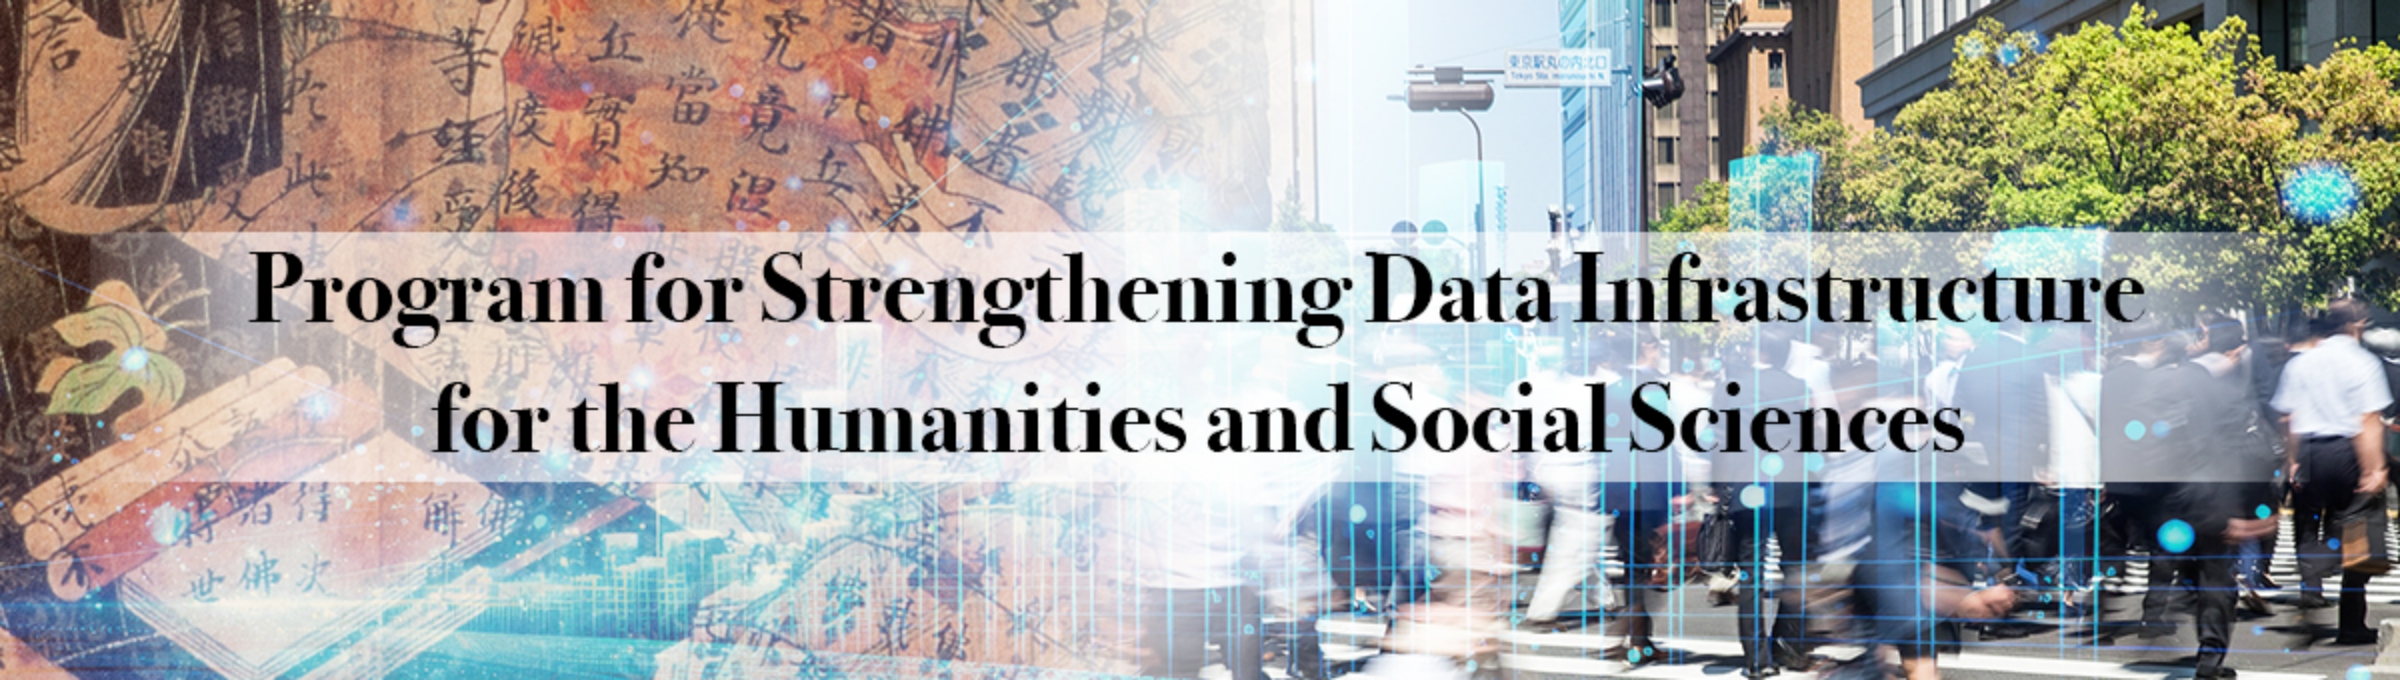 JSPS 人文学・社会科学データインフラストラクチャー強化事業